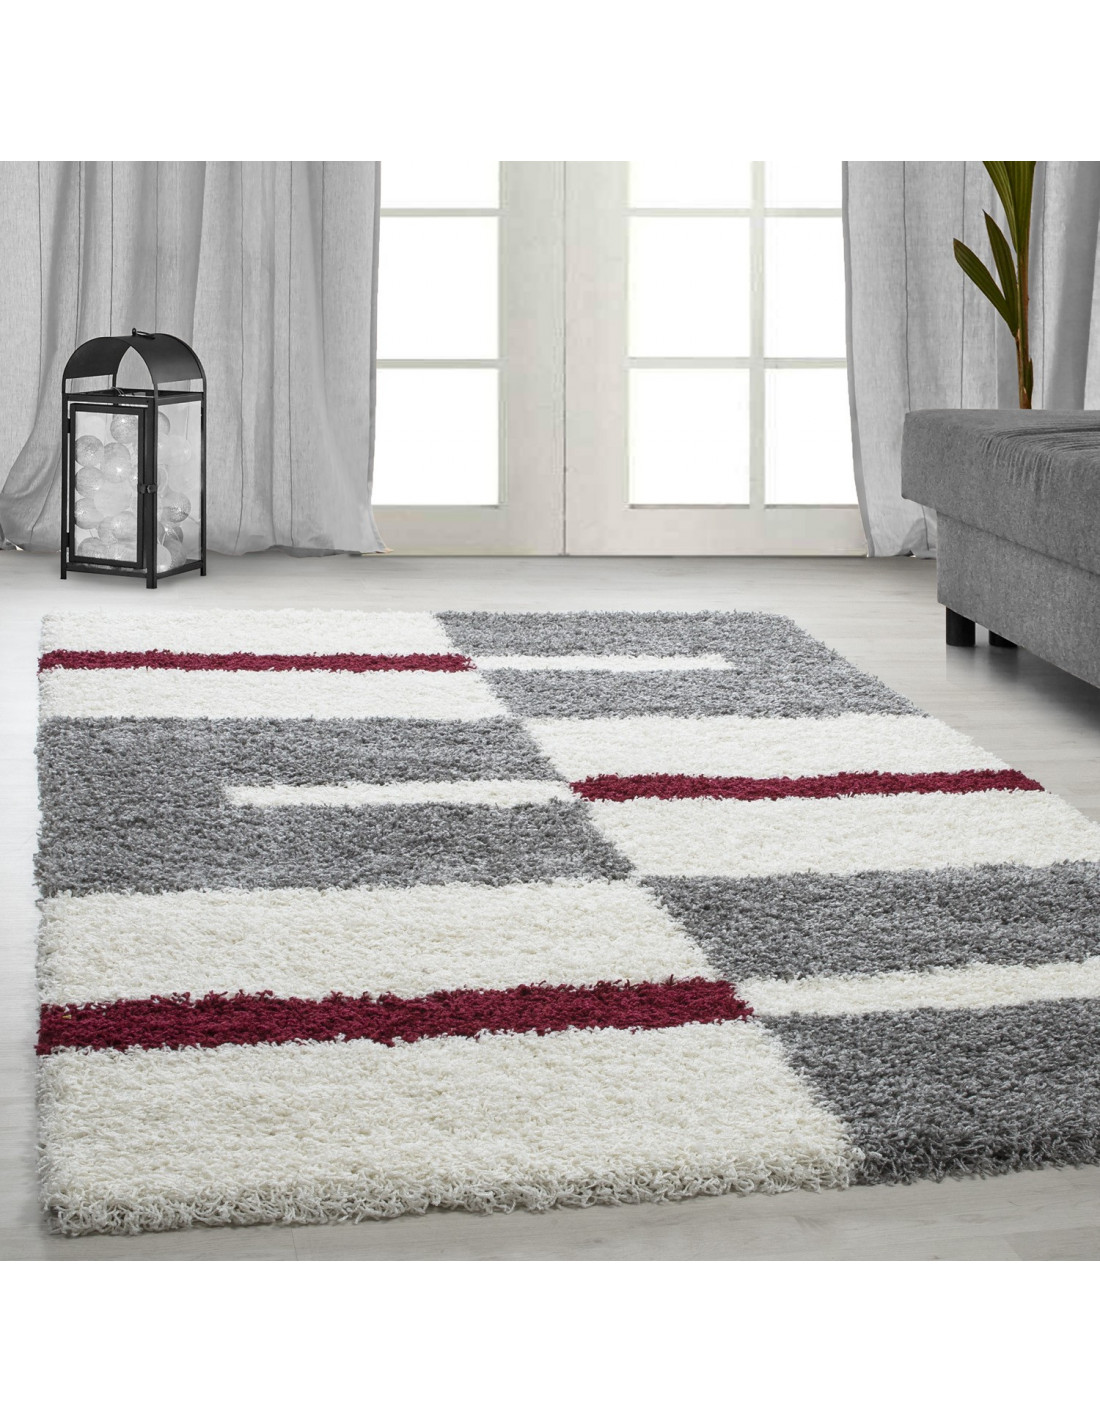 Hoogpolig tapijt, poolhoogte 3 cm, grijs-wit-rood